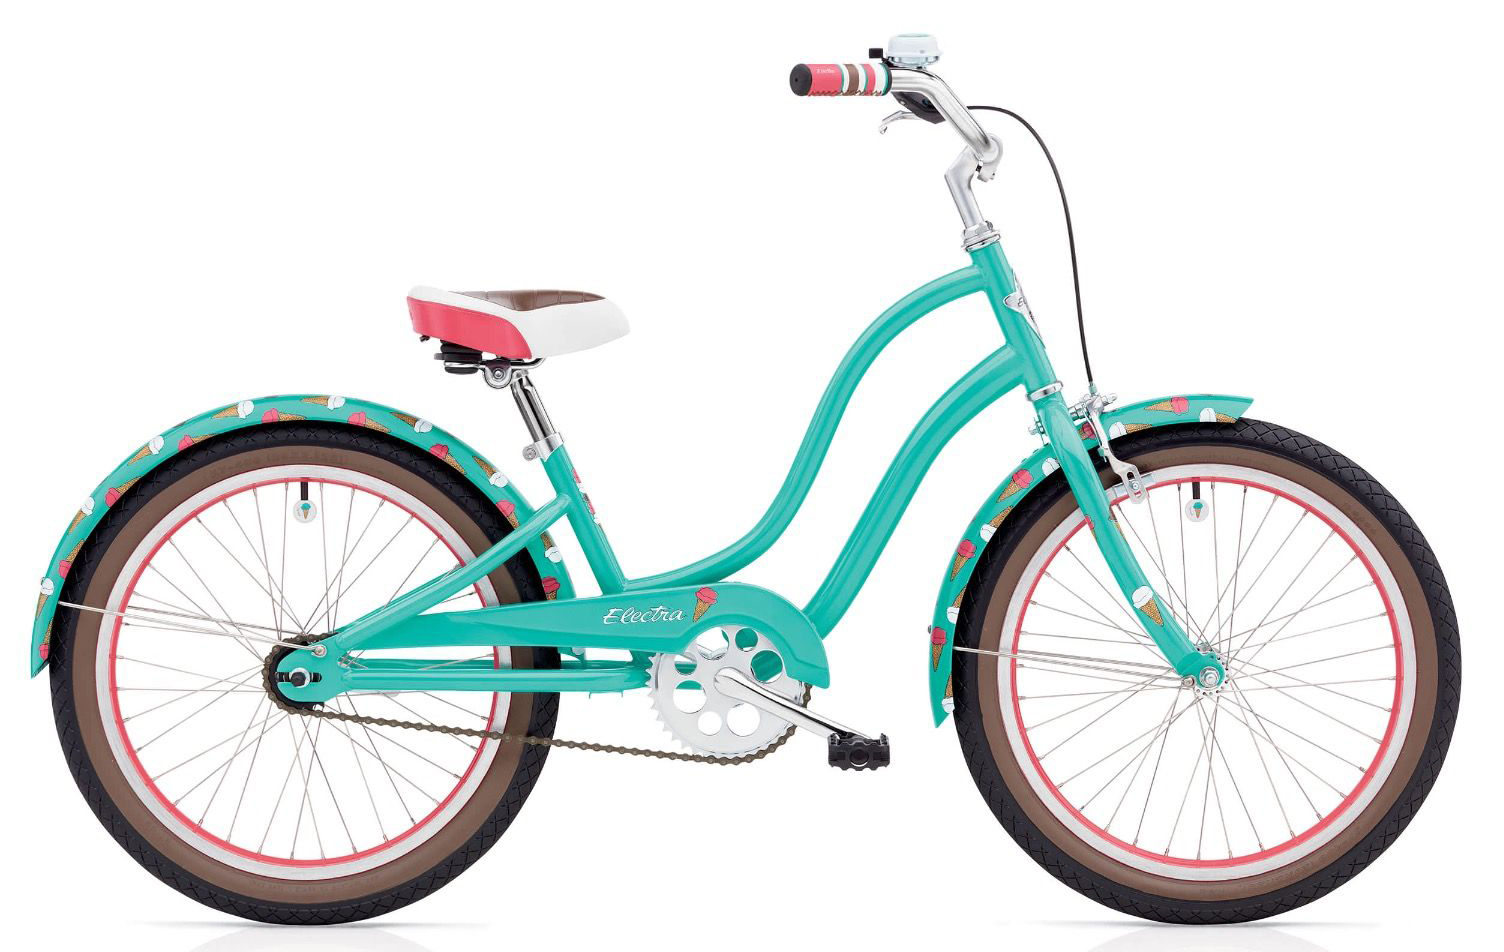  Отзывы о Детском велосипеде Electra Sweet Ride 1 2019